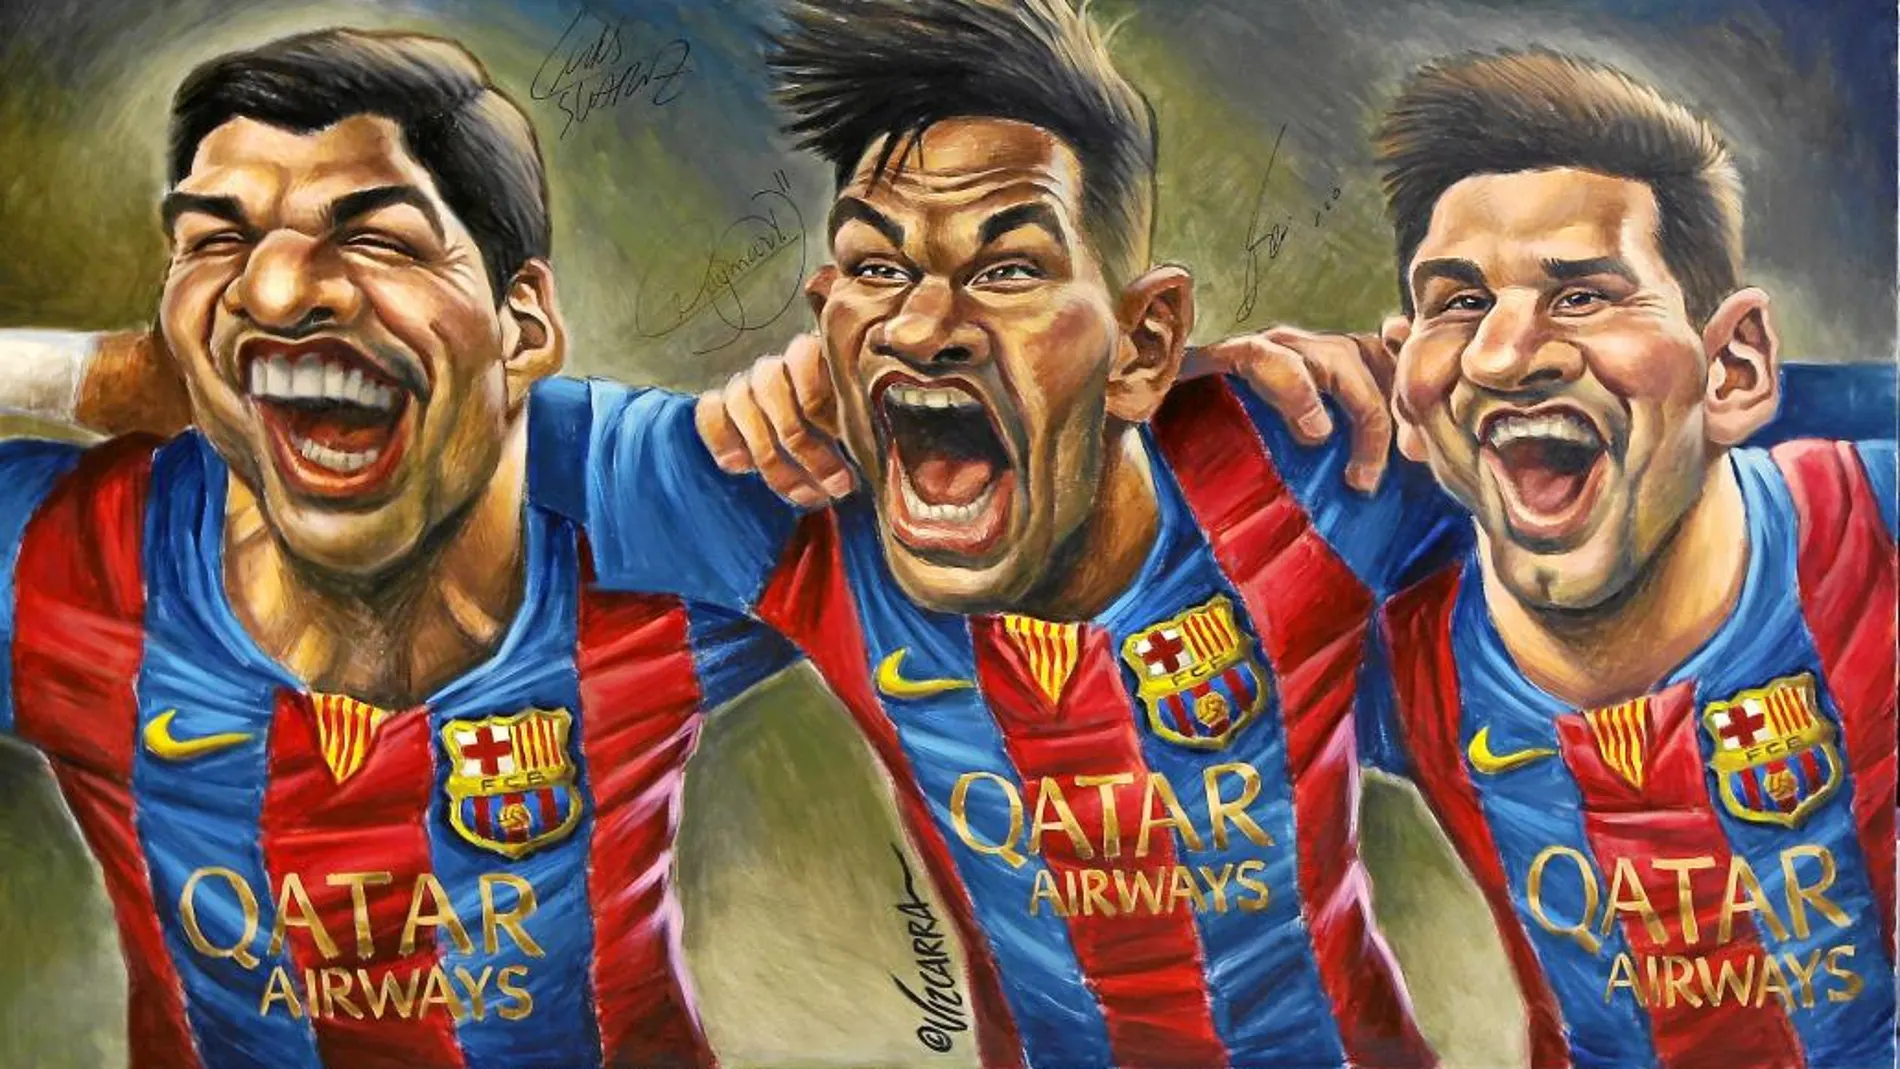 A Luis Suárez le regalaron un cuadro en el que se le ve junto a Neymar y Messi. Son los inseparables del Barcelona